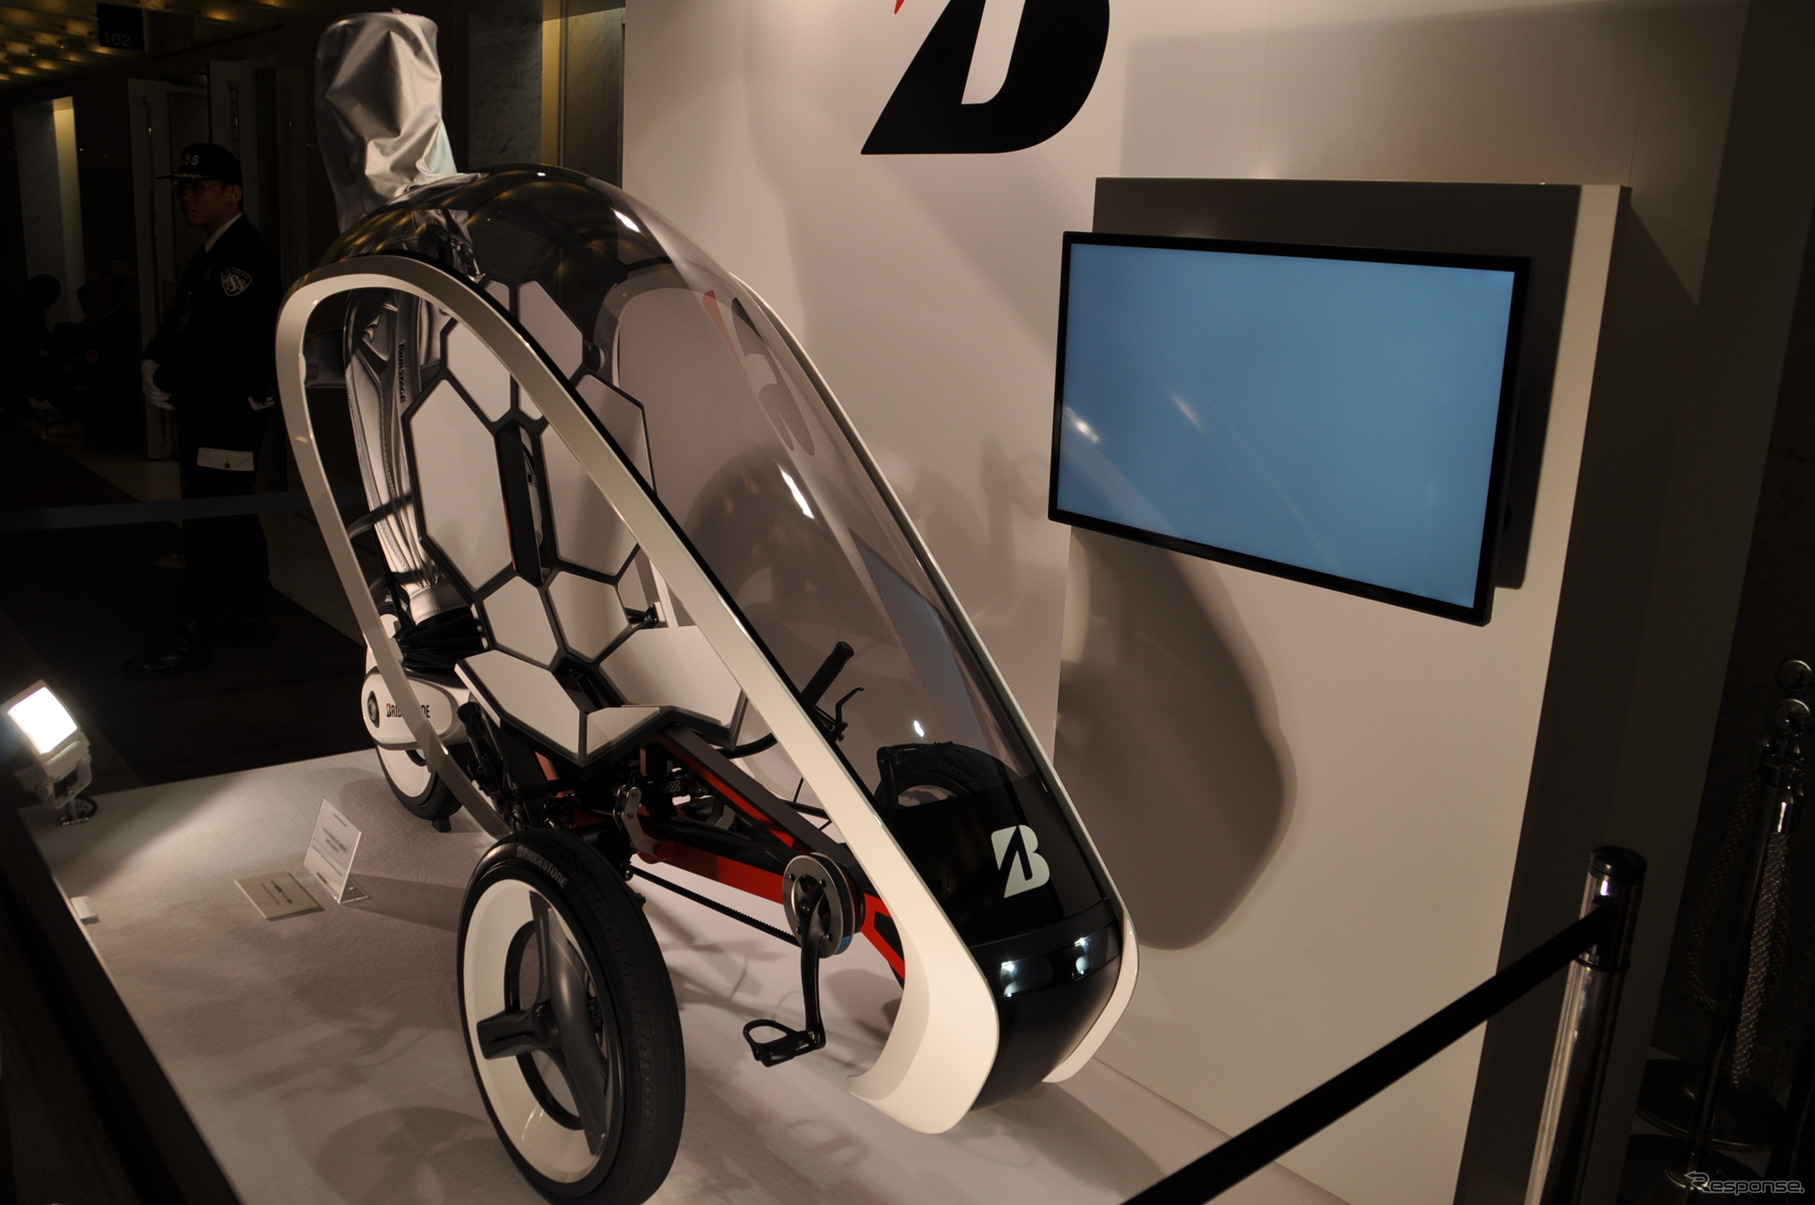 ブリヂストンの未来型電動アシスト自転車